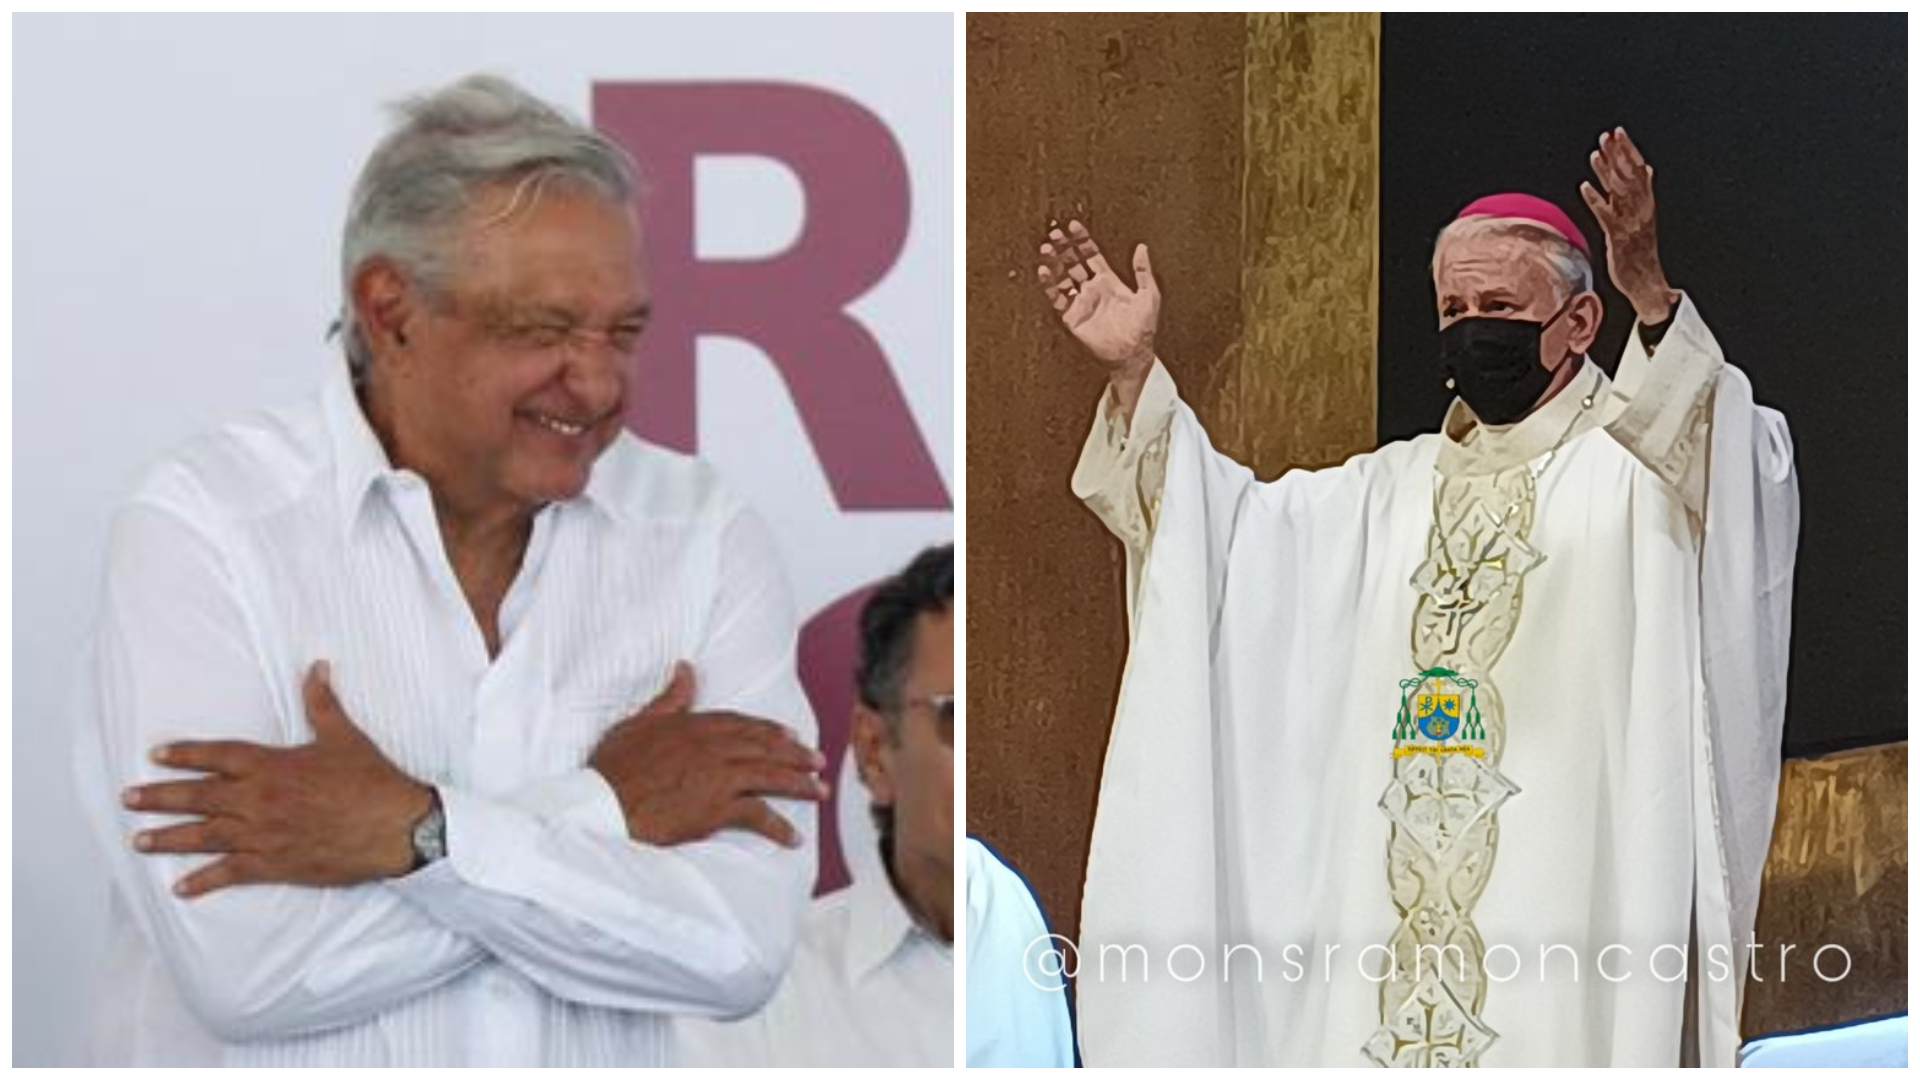 “Abrazos, no balazos, es demagogia y complicidad”: obispo de Cuernavaca criticó la estrategia de seguridad de AMLO